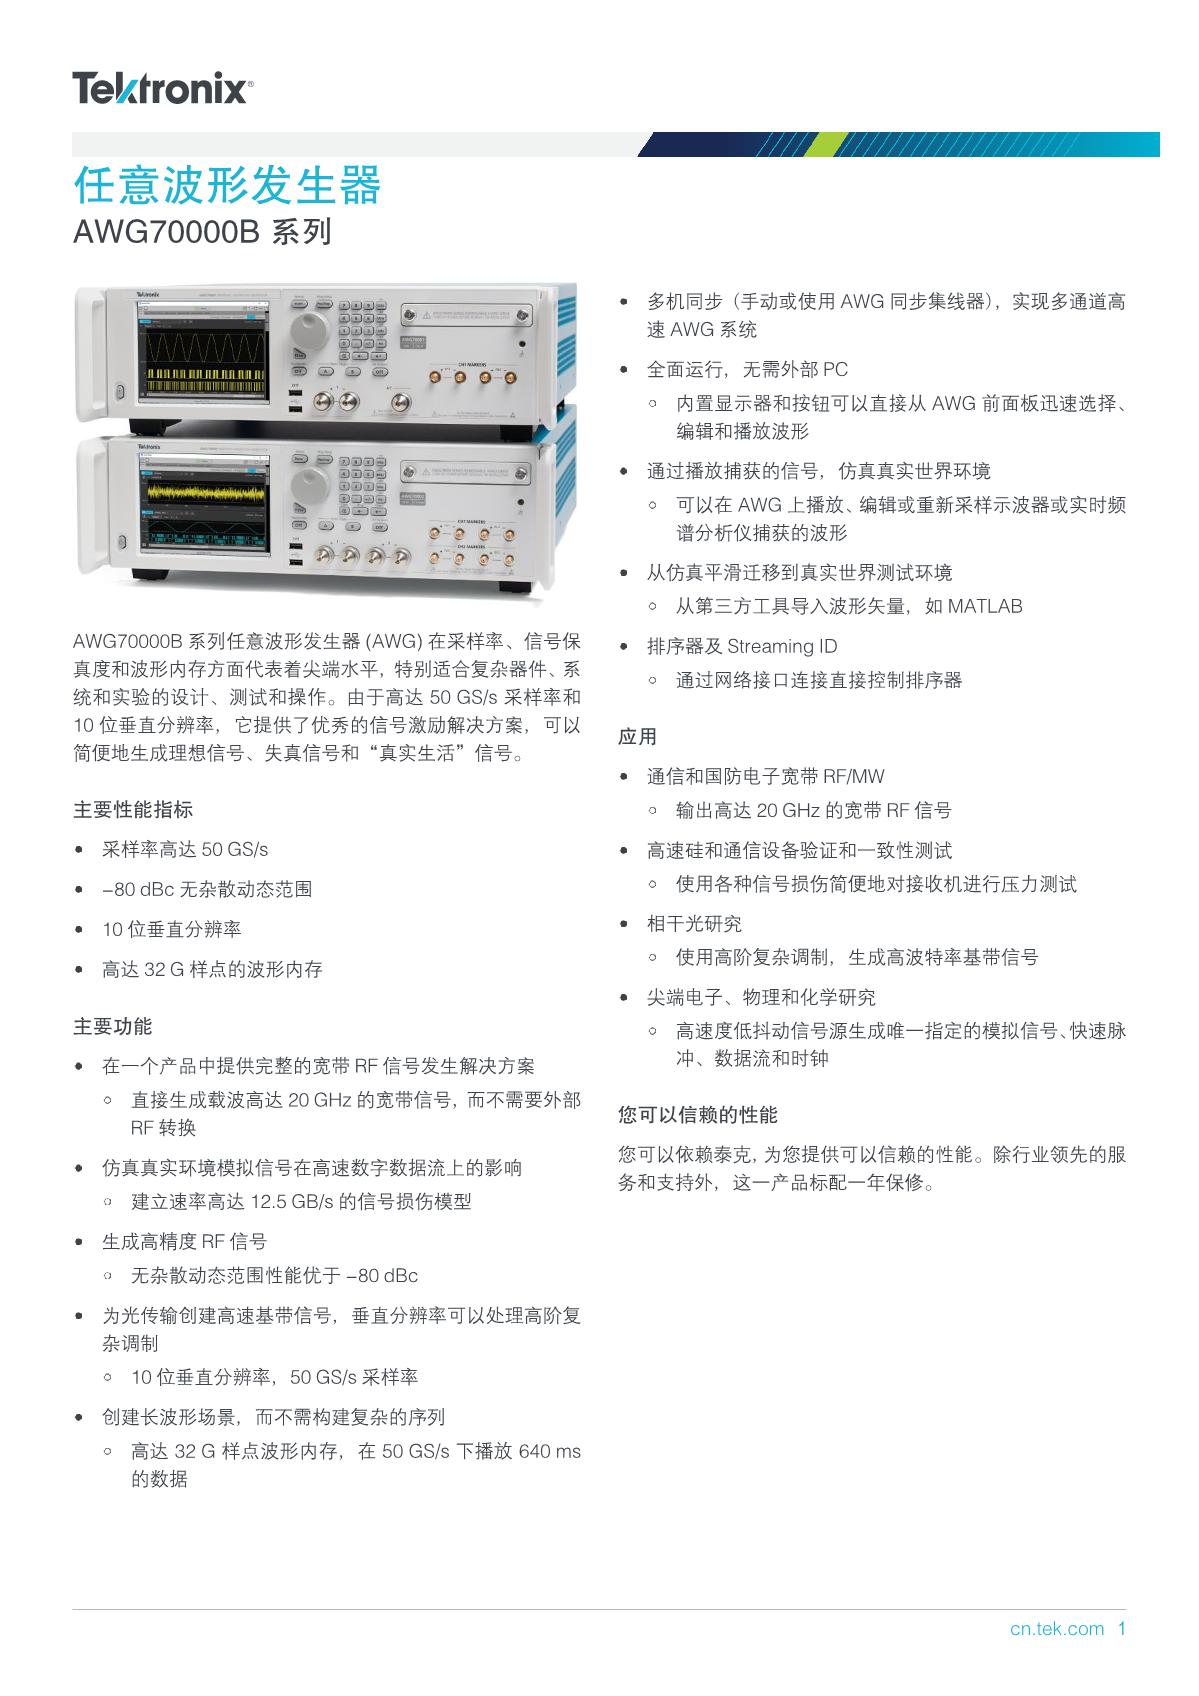 AWG70000B-Arbitrary-Waveform-Generator-Datasheet-ZH-CN-76C614121_1.JPG